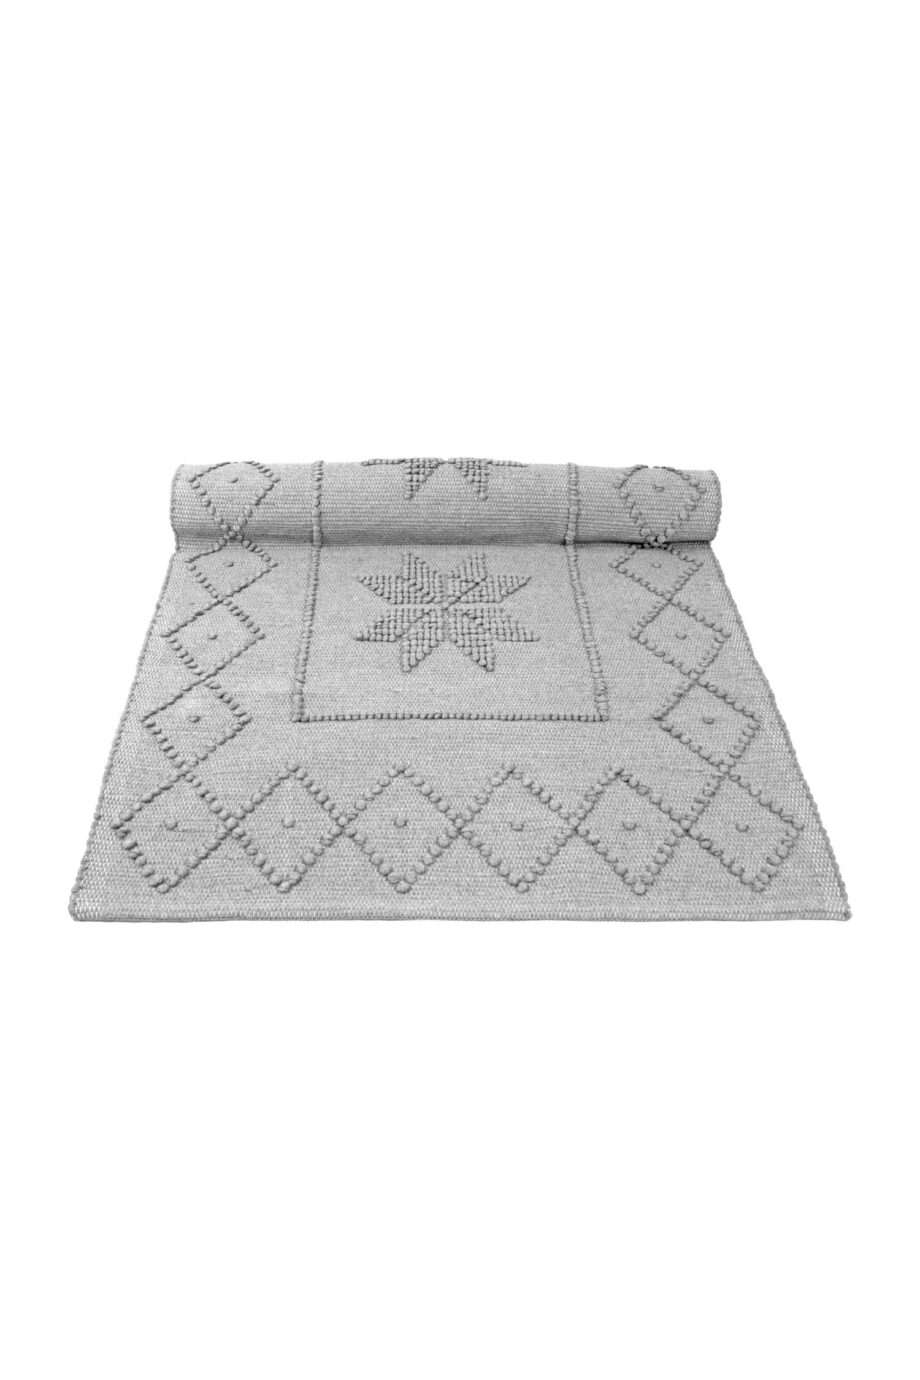 star light grey woven cotton floor mat small